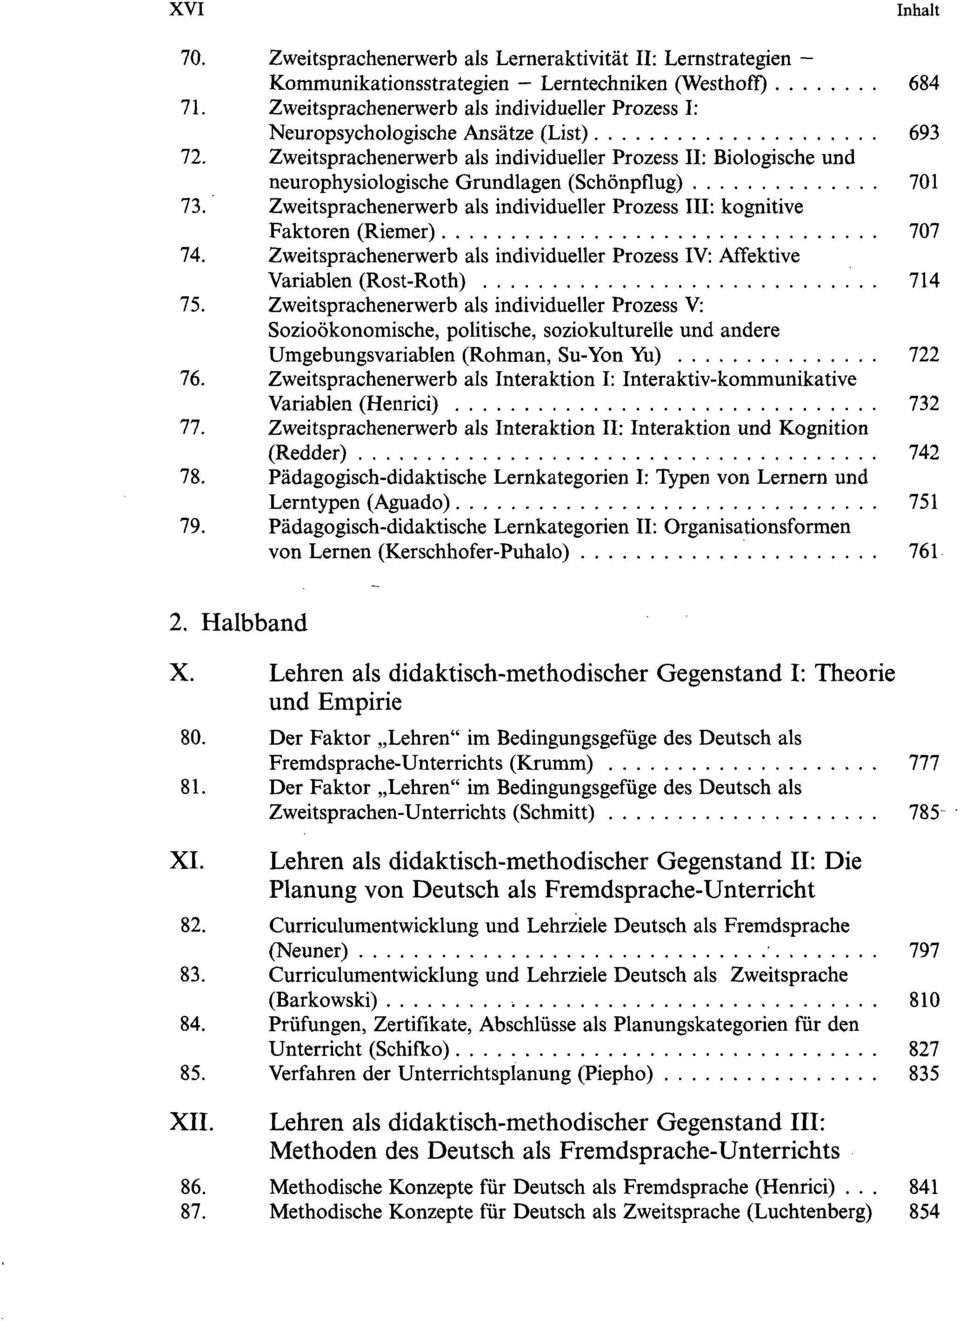 Zweitsprachenerwerb als individueller Prozess II: Biologische und neurophysiologische Grundlagen (Schönpflug) 701 73.